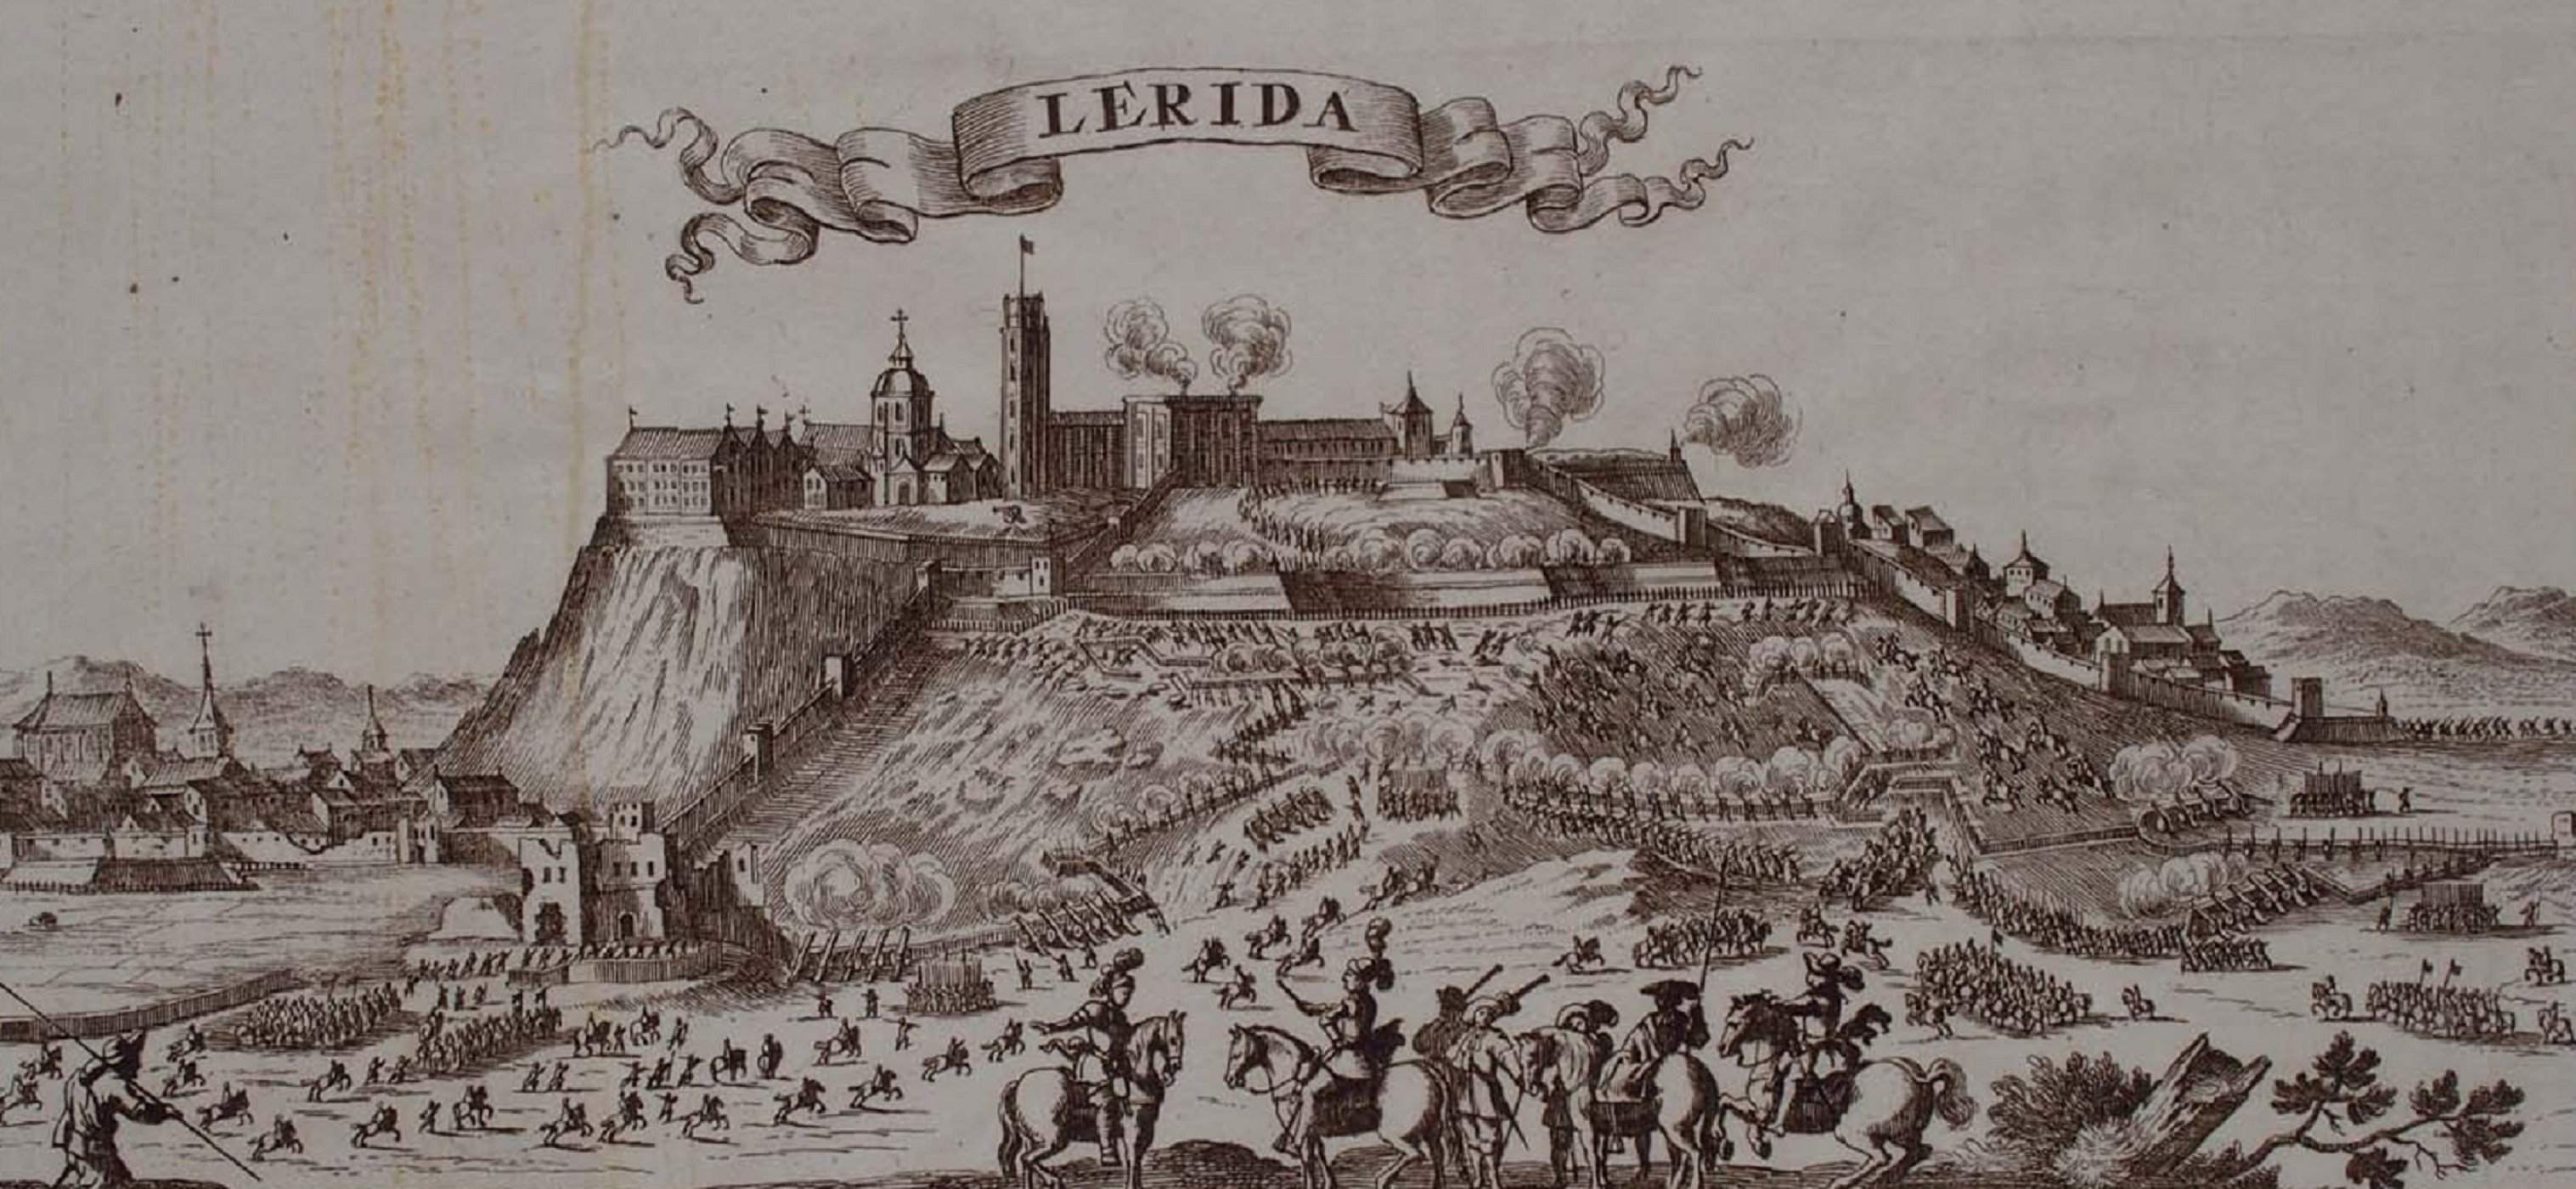 Los borbónicos asaltan Lleida y asesinan a sangre fría un mínimo de 700 civiles